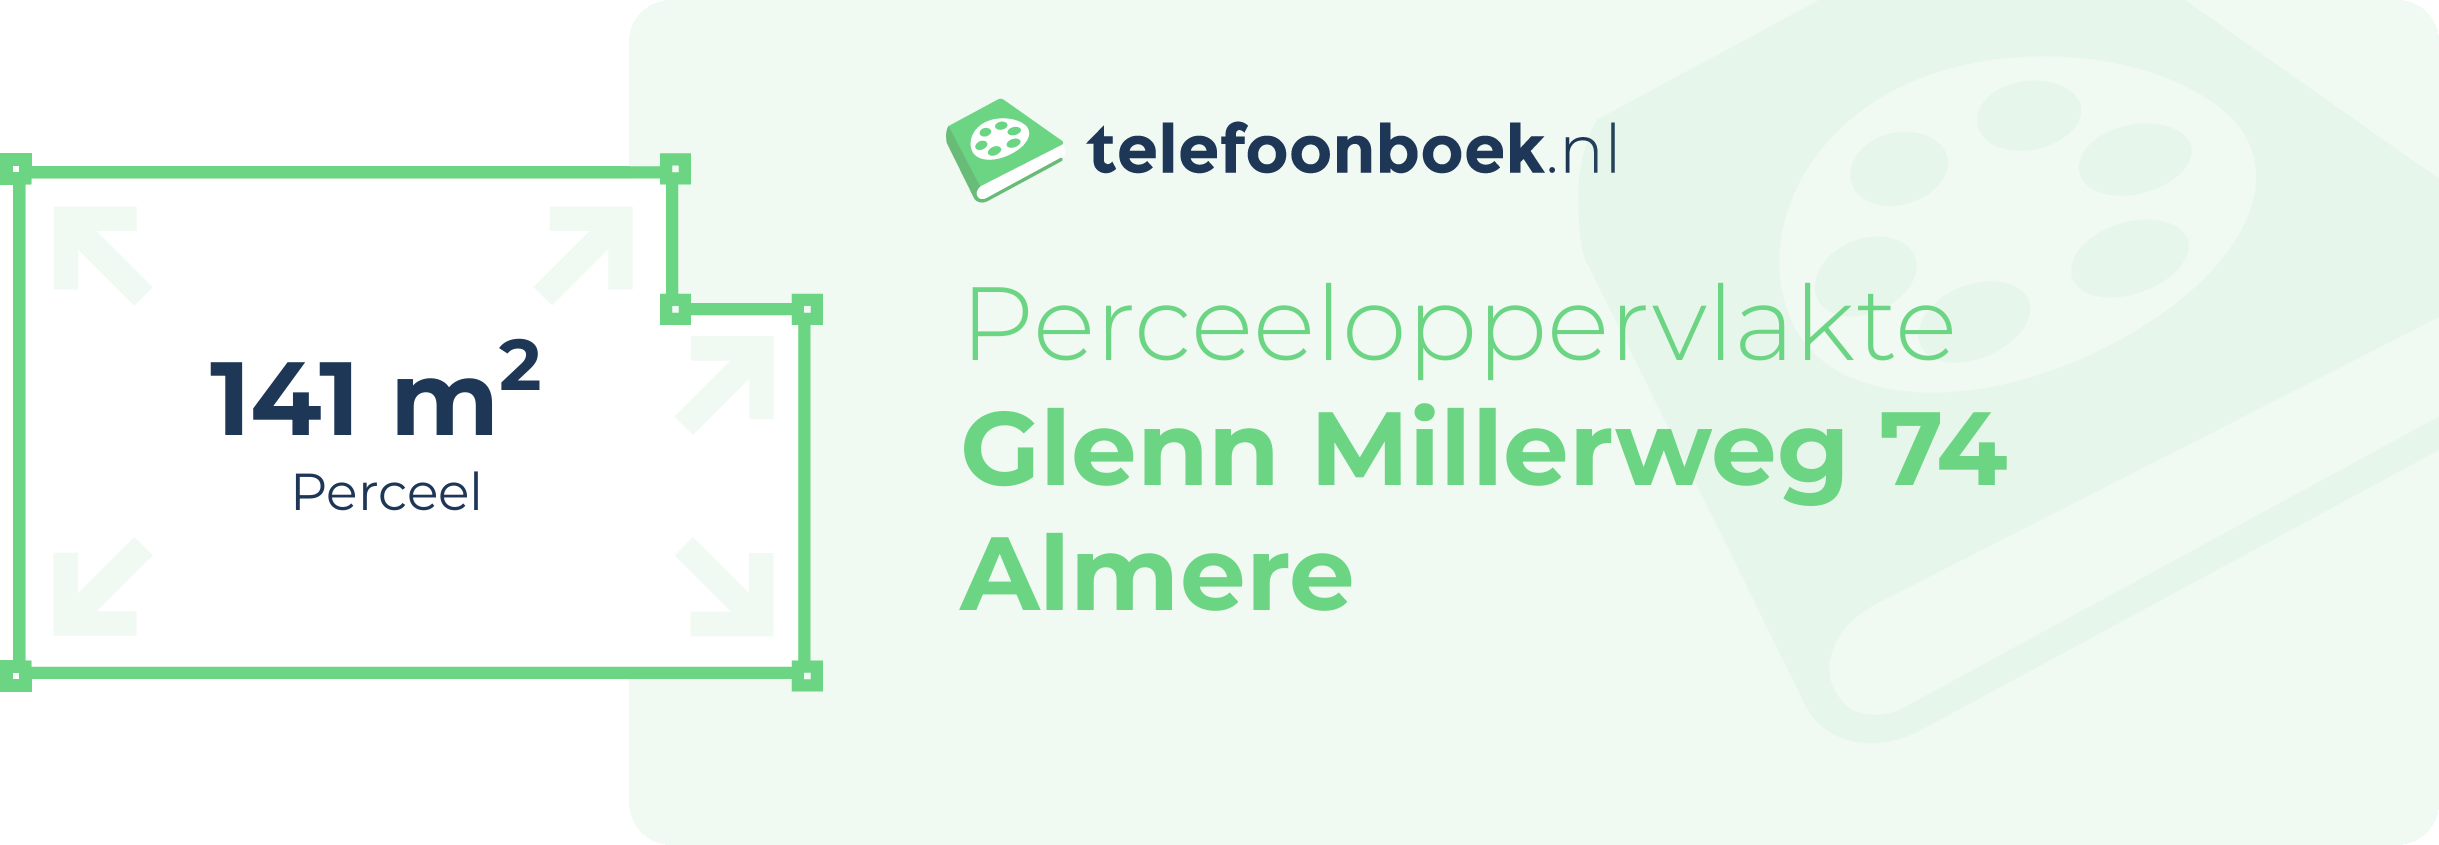 Perceeloppervlakte Glenn Millerweg 74 Almere